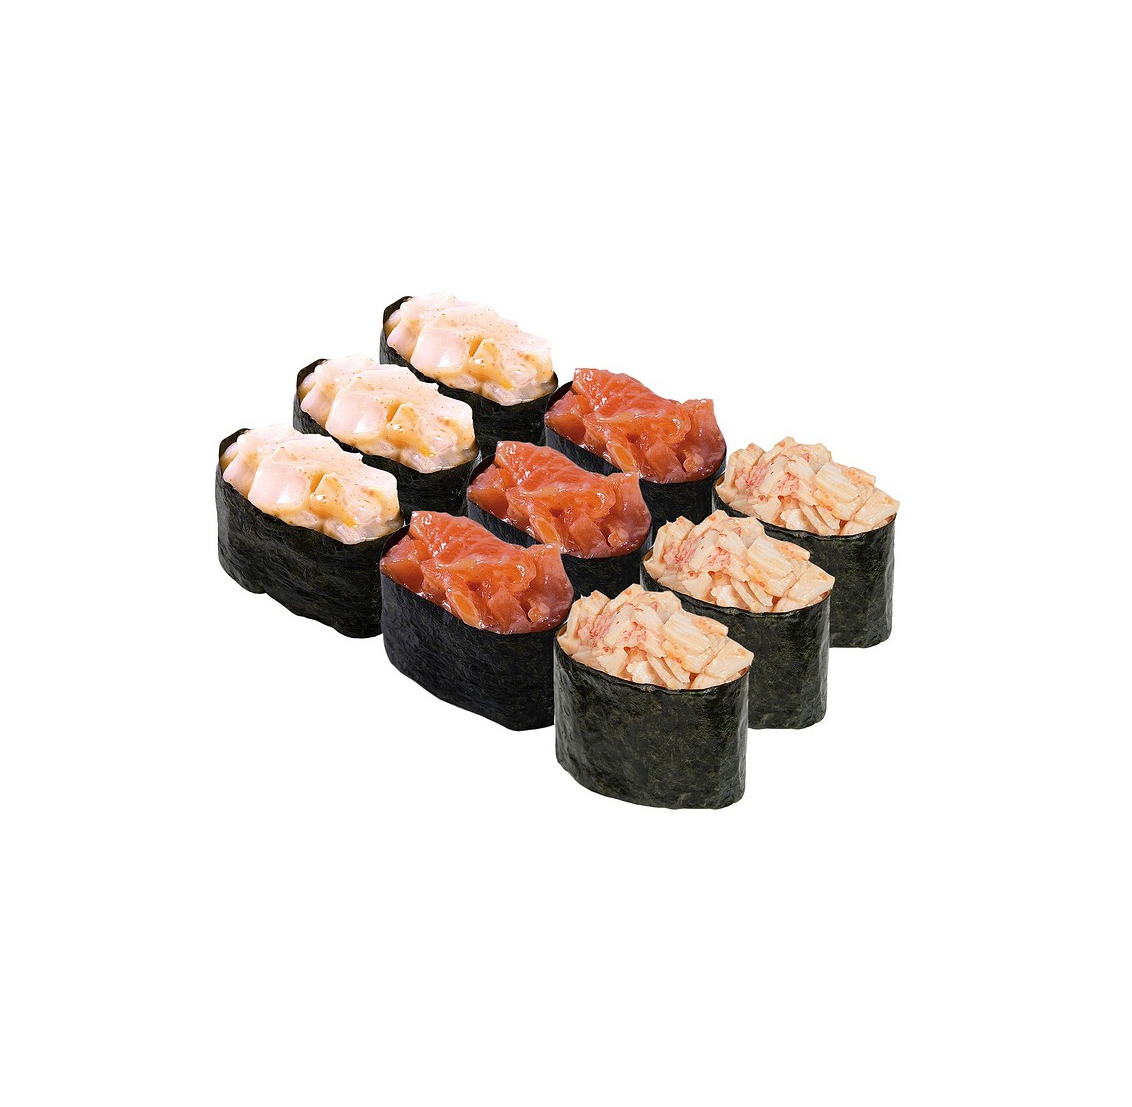 Заказать суши кингисепп с доставкой фото 4